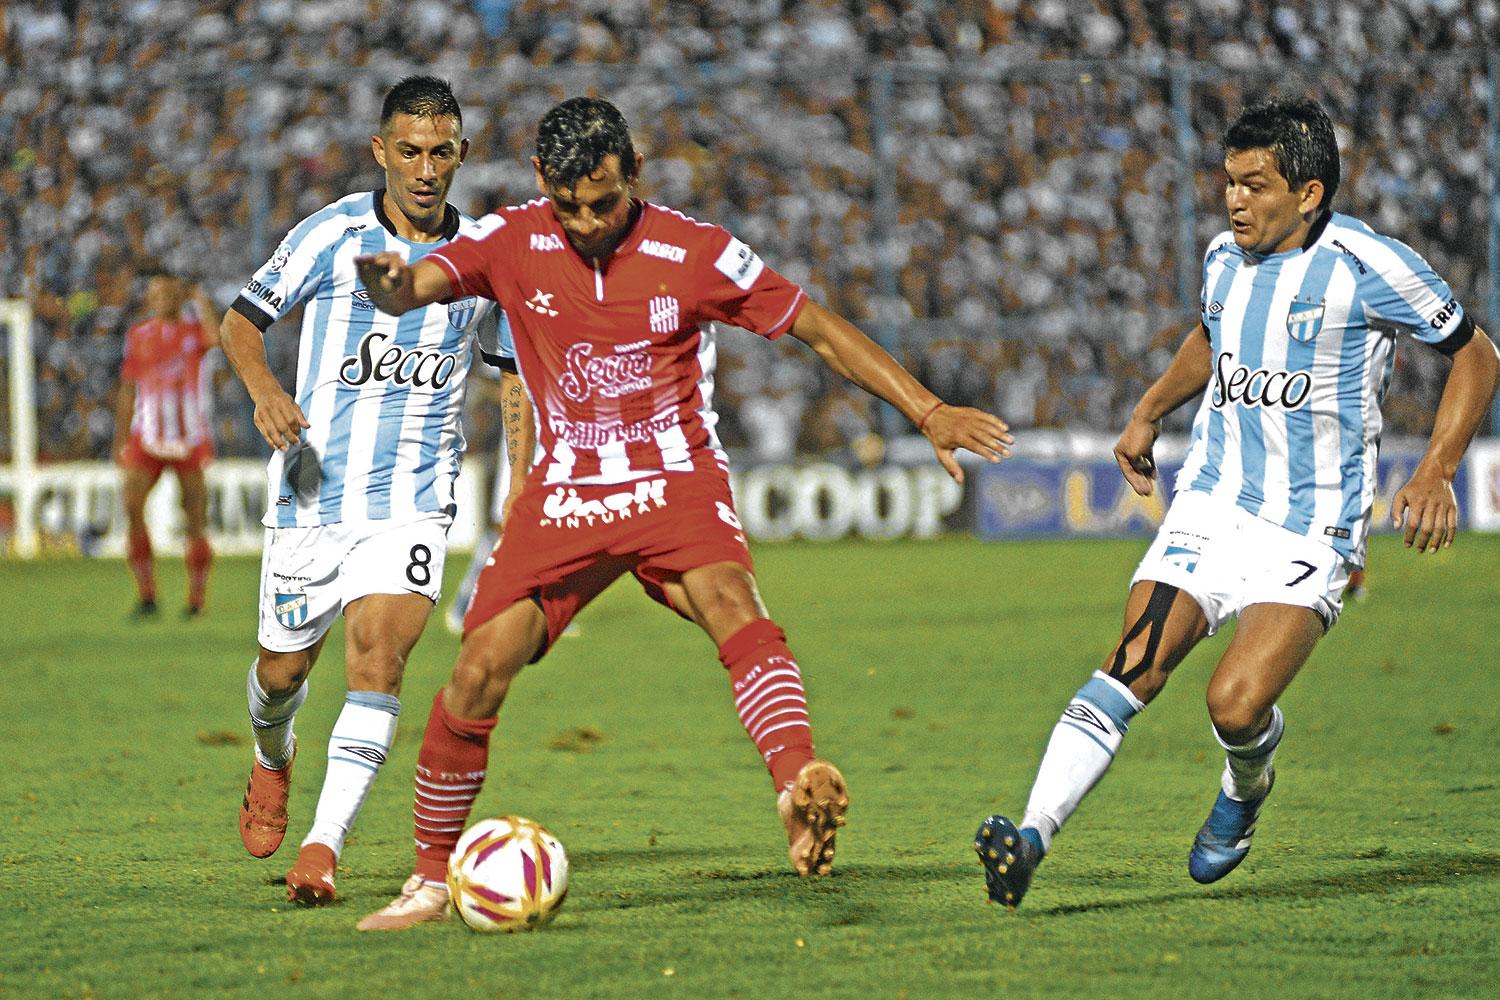 GRANDES REFERENTES. “Tino” Costa y “Bebé” Acosta (con la N° 8) y “Pulguita” Rodríguez (con la N°7), en el partido de 2018.